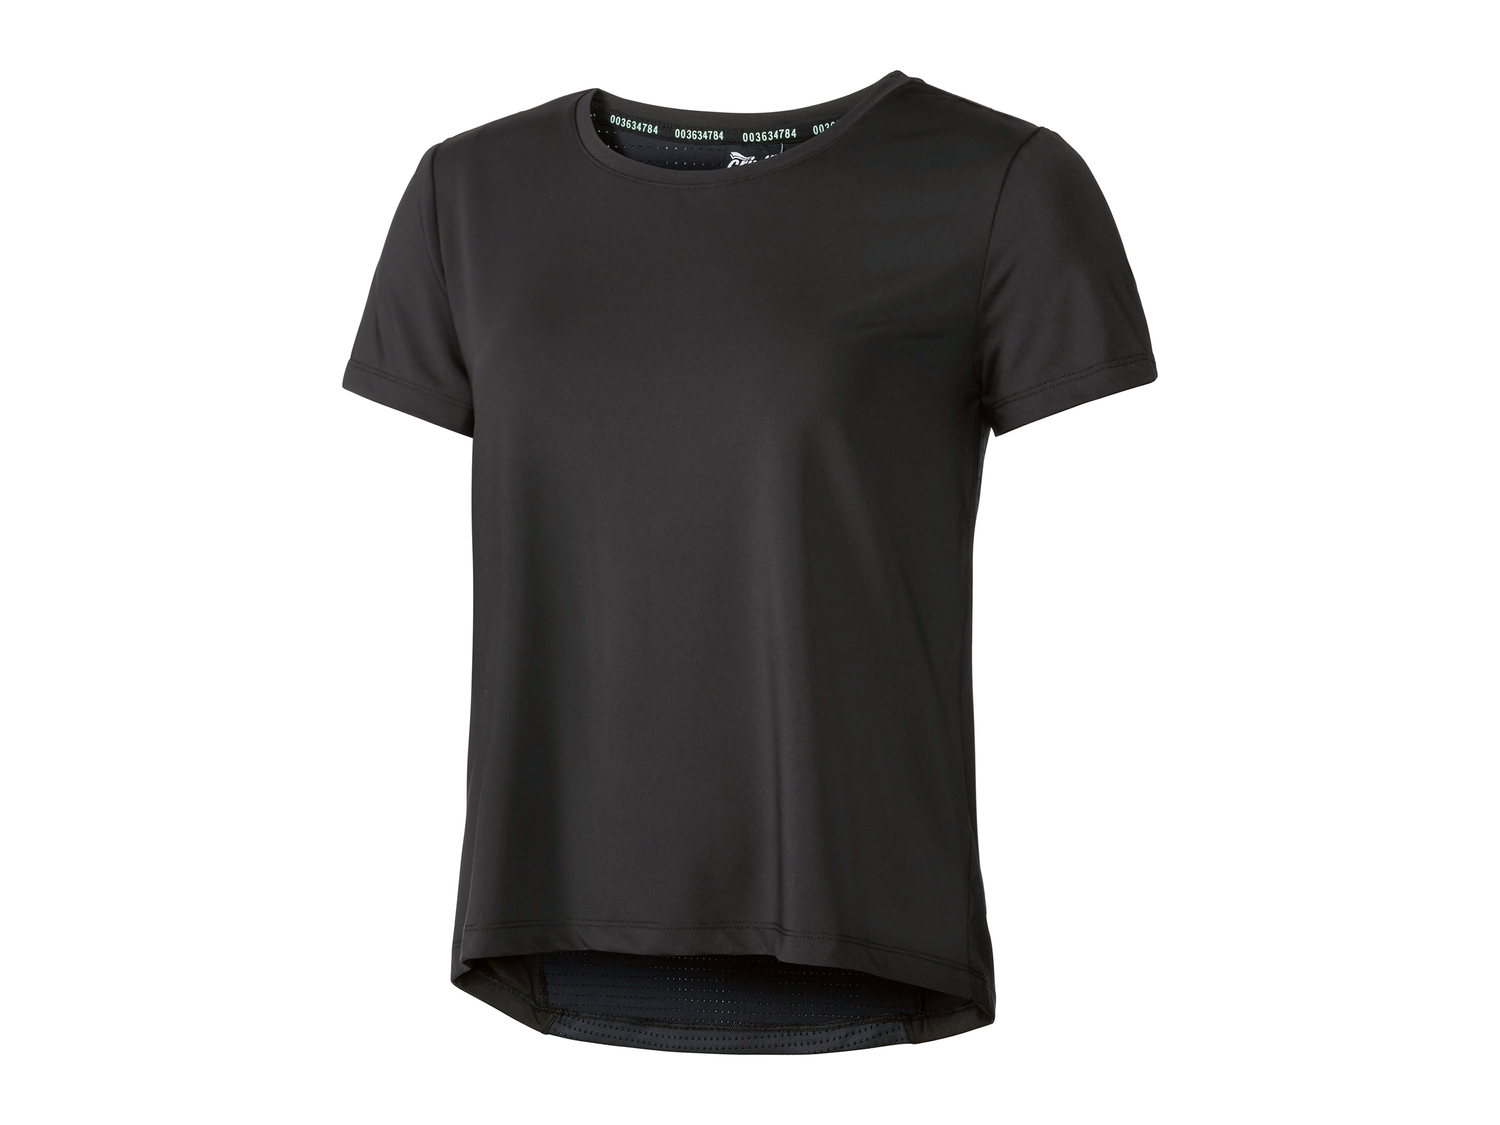 T-shirt sportiva da donna Crivit, prezzo 4.99 &#8364; 
Misure: S-L
Taglie disponibili

Caratteristiche

- ...